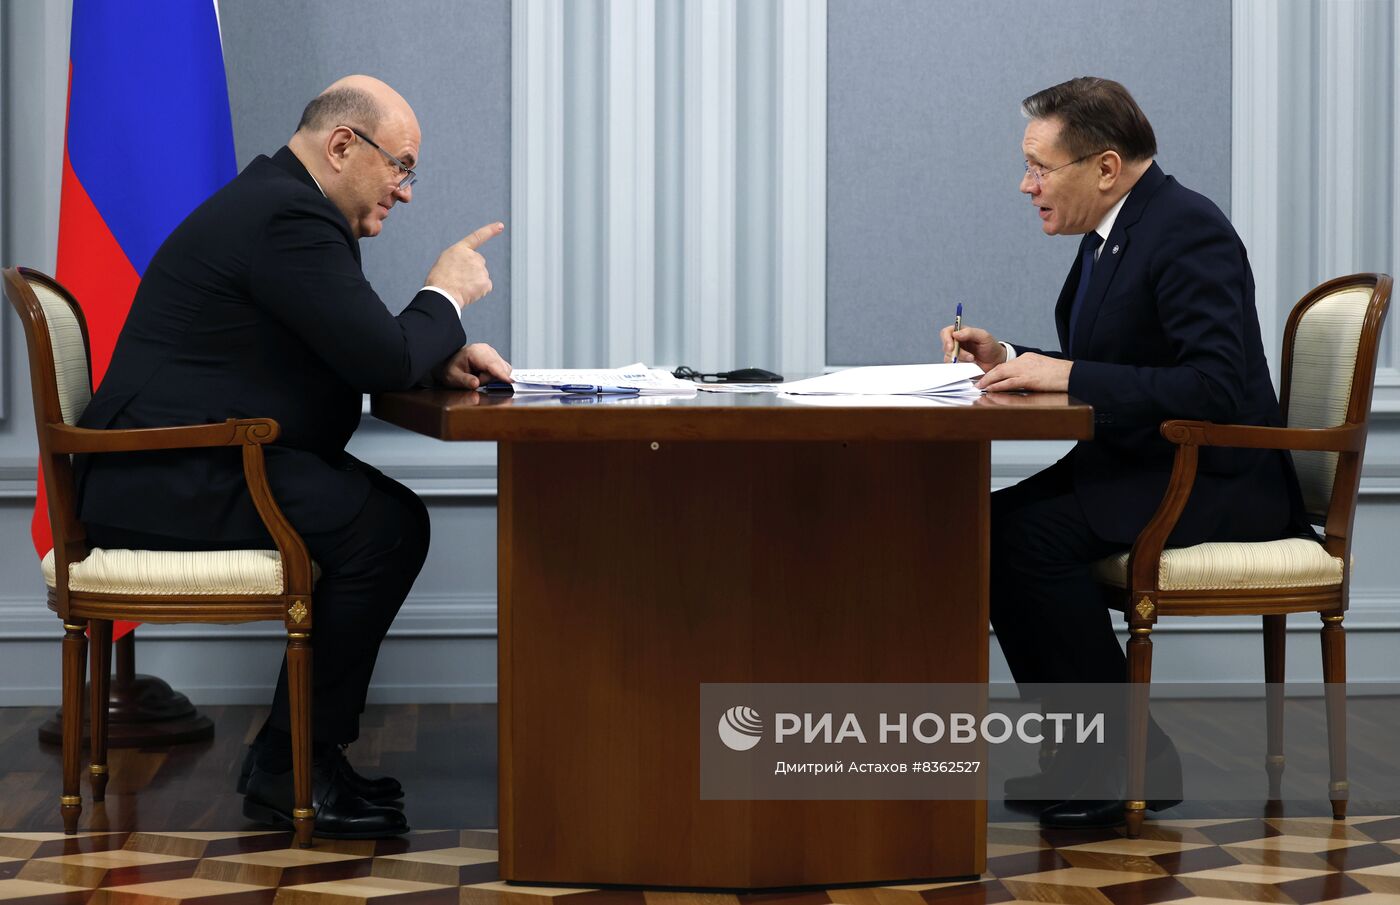 Премьер-министр РФ М. Мишустин встретился с главой госкорпорации "Росатом" А. Лихачевым